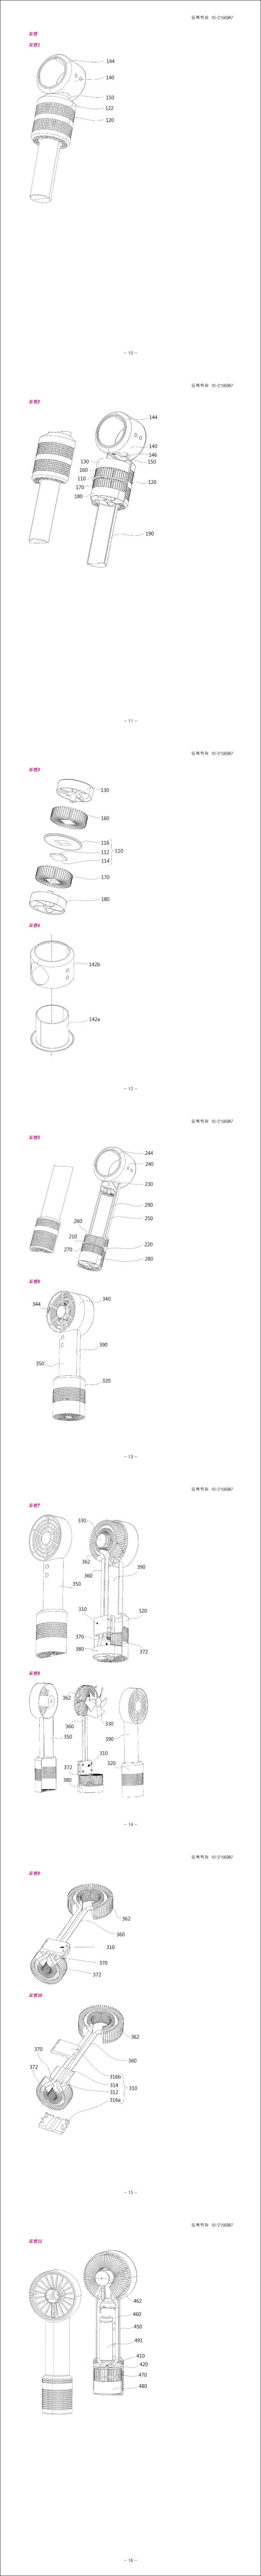 특허 제10-2156987호(휴대용 냉풍기, 윤국영, 